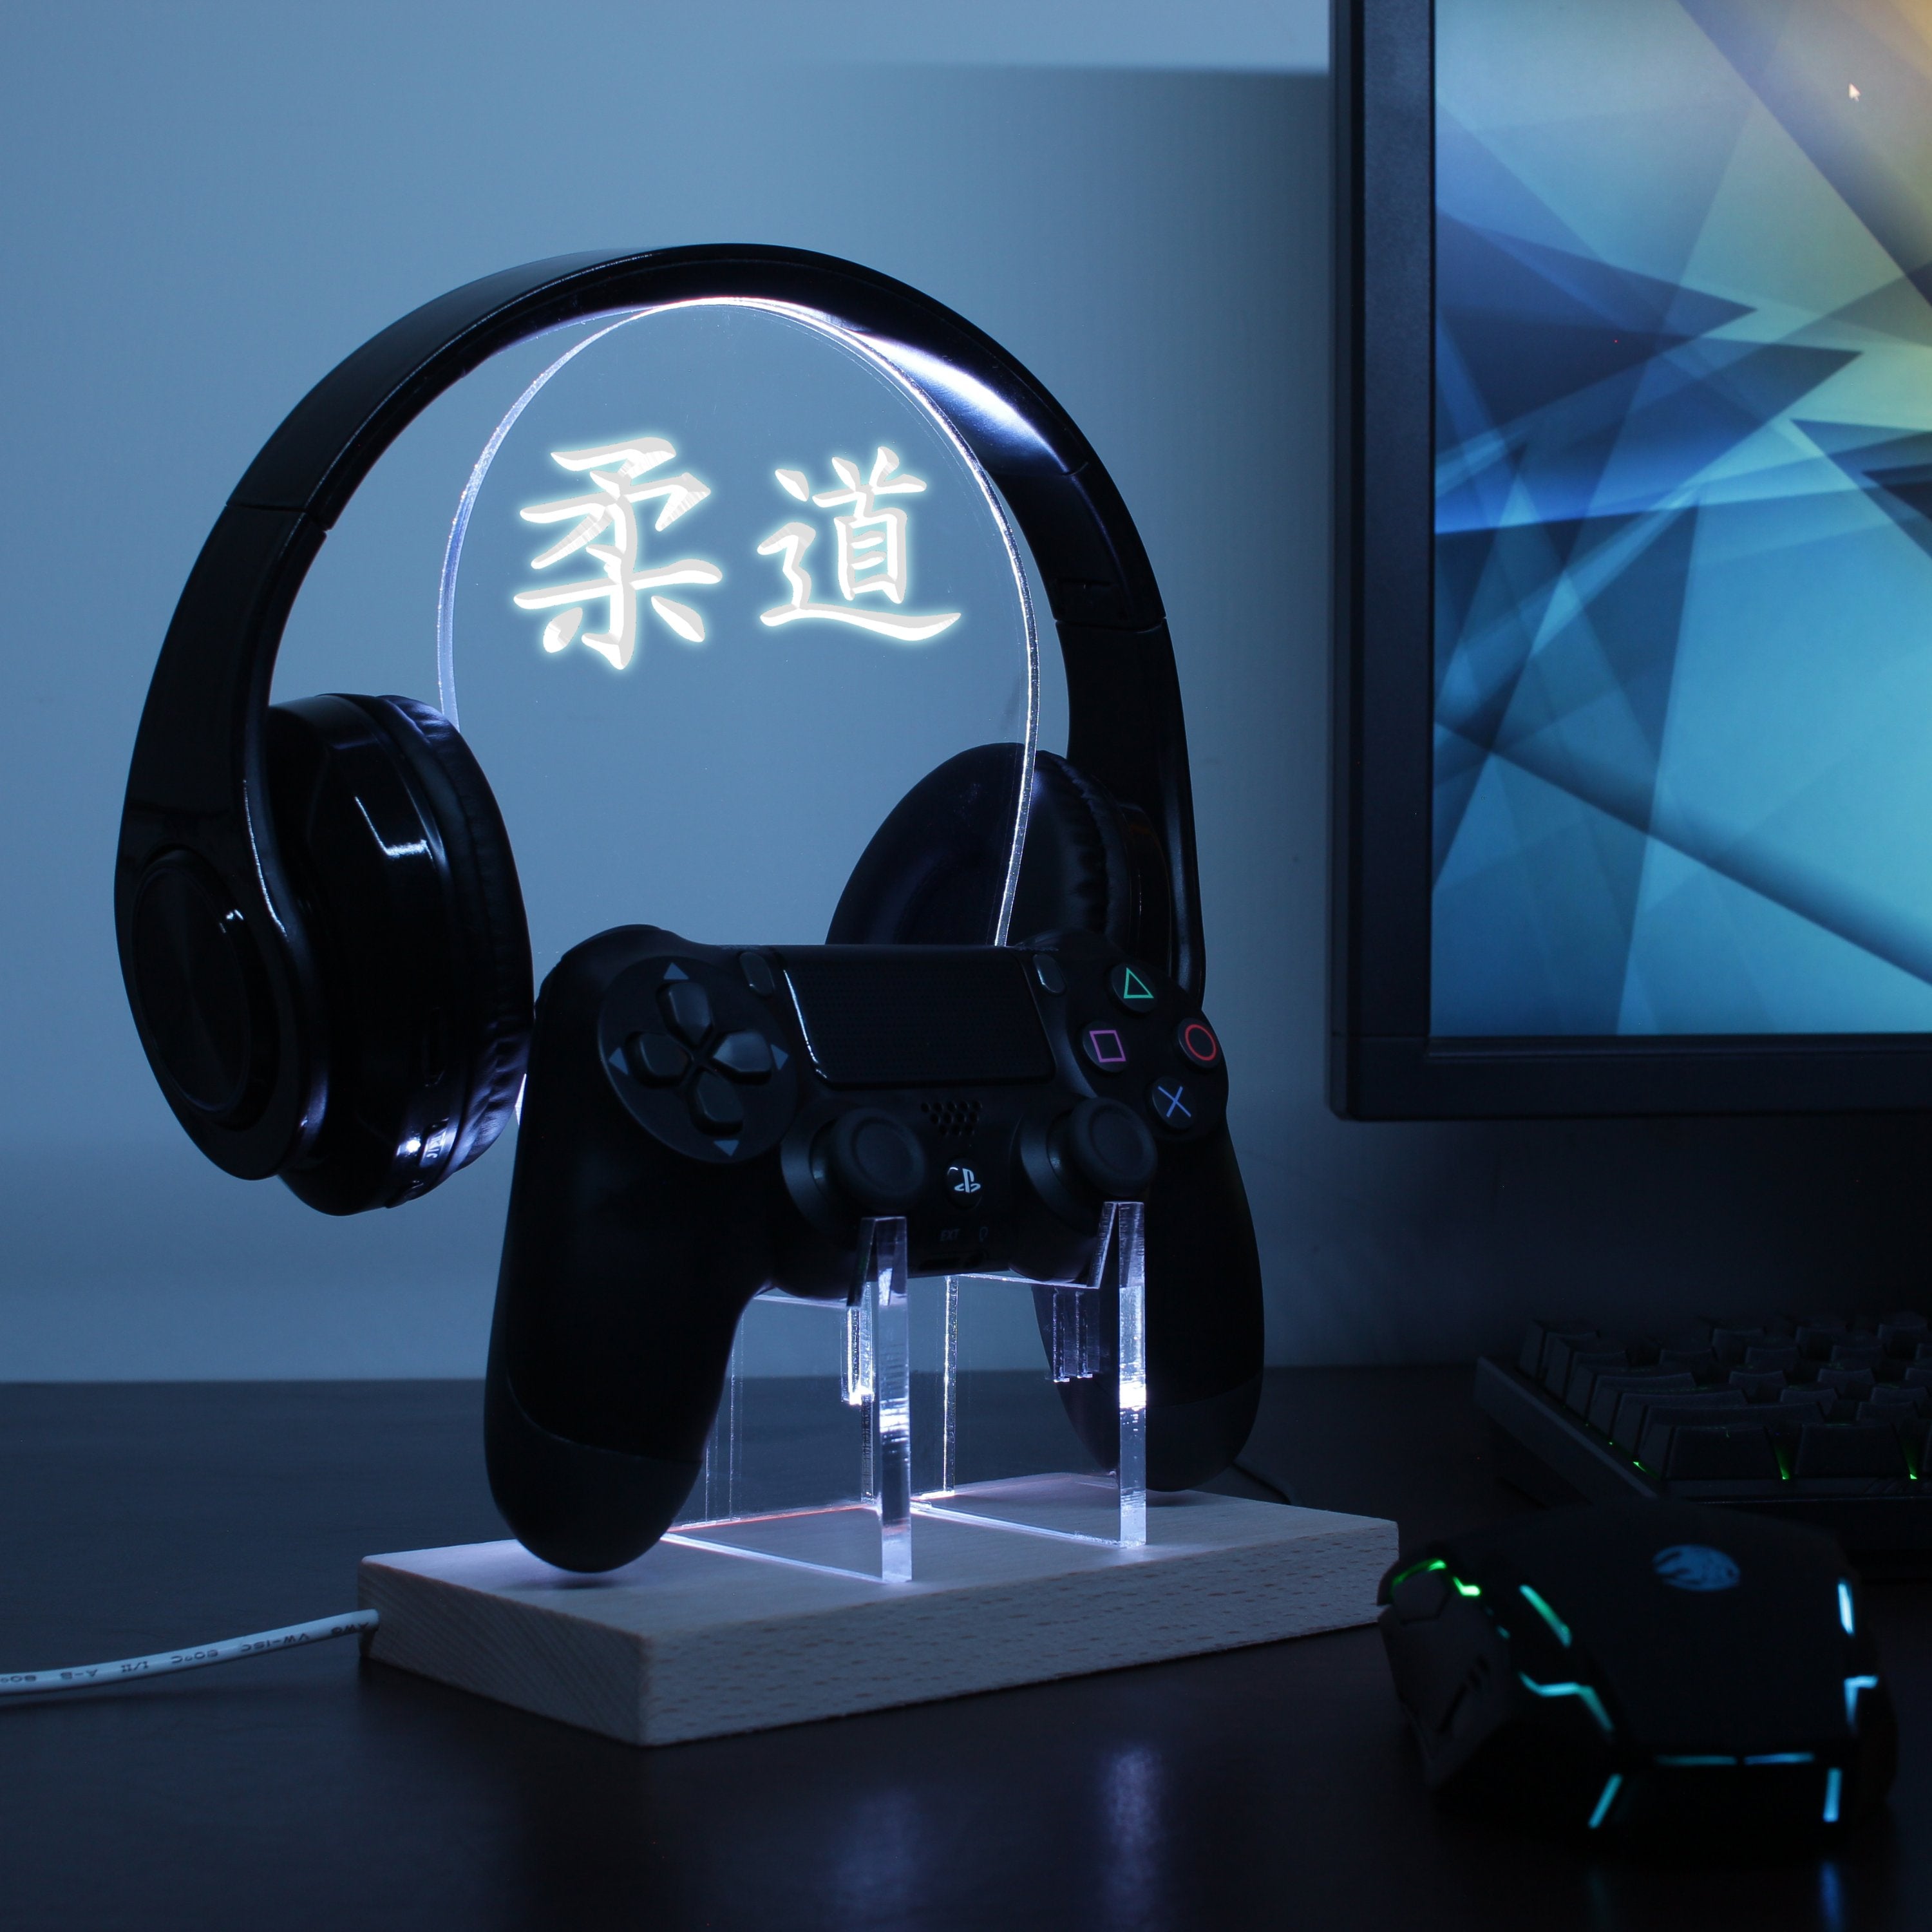 Judo Japanese Kanji Symbol LED Gaming Headset Controller Stand